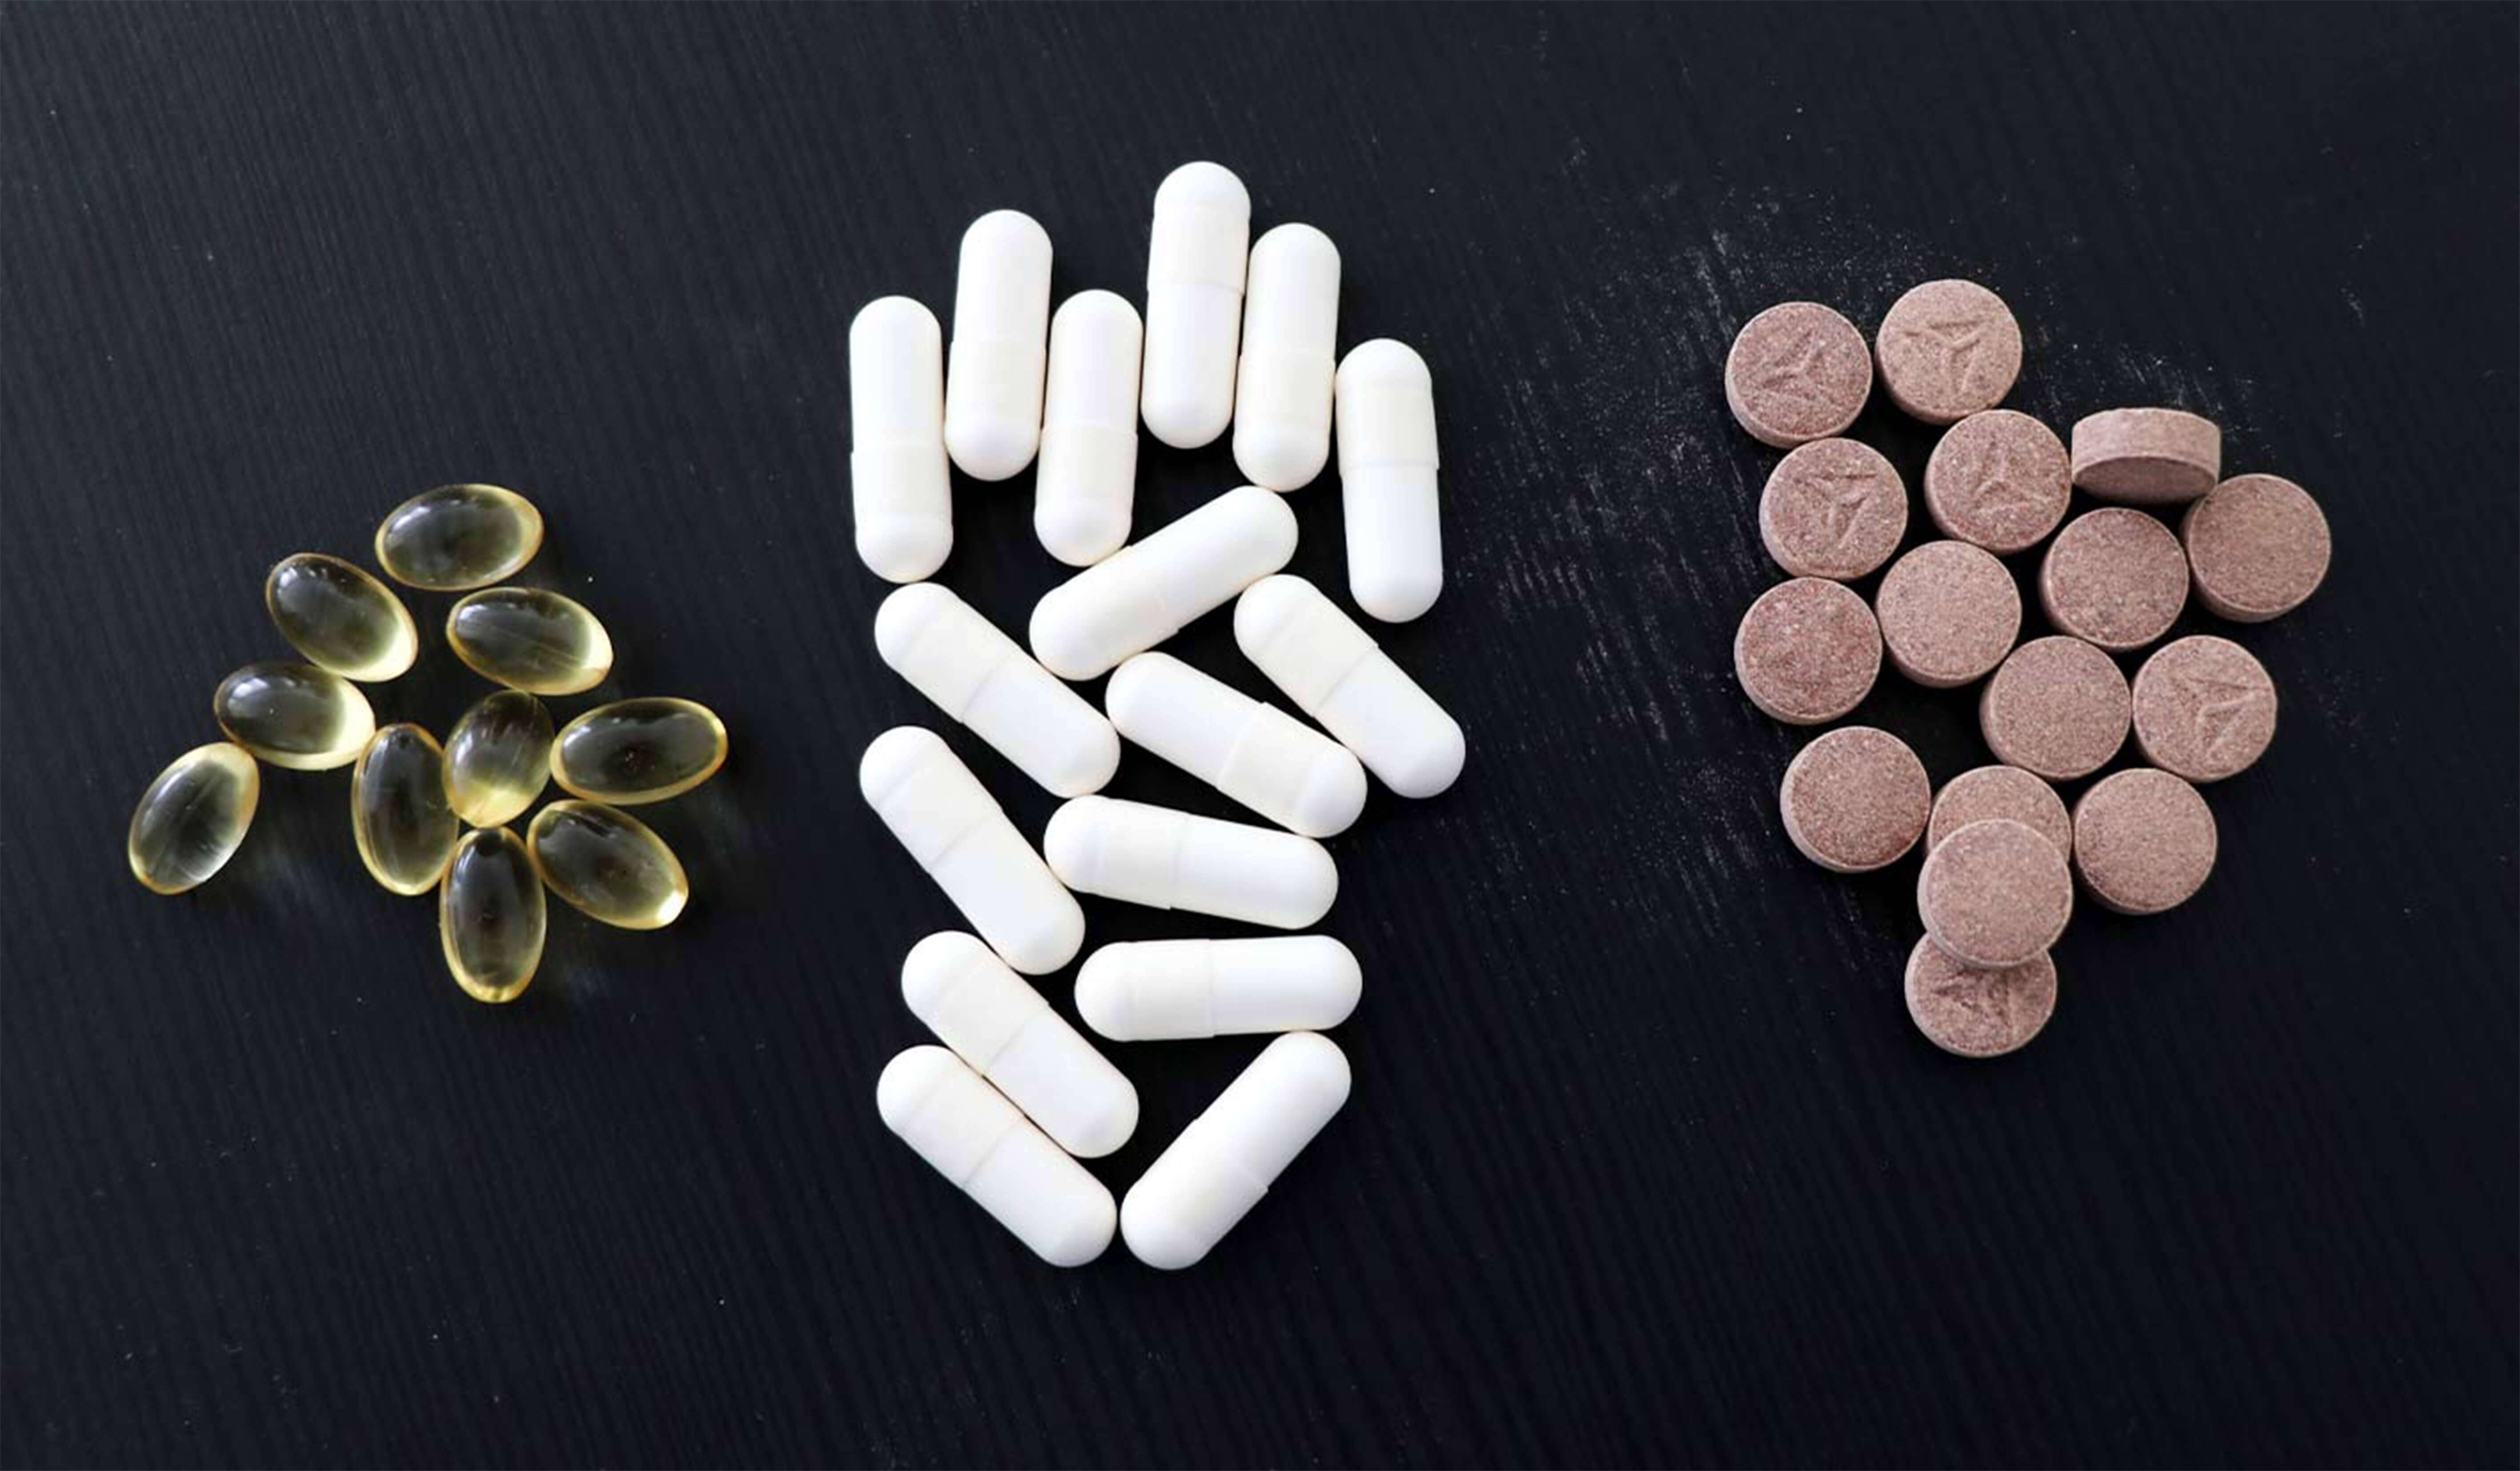 Pillole con piccoli aghi esprime farmaci nel corpo non è peggio di punture